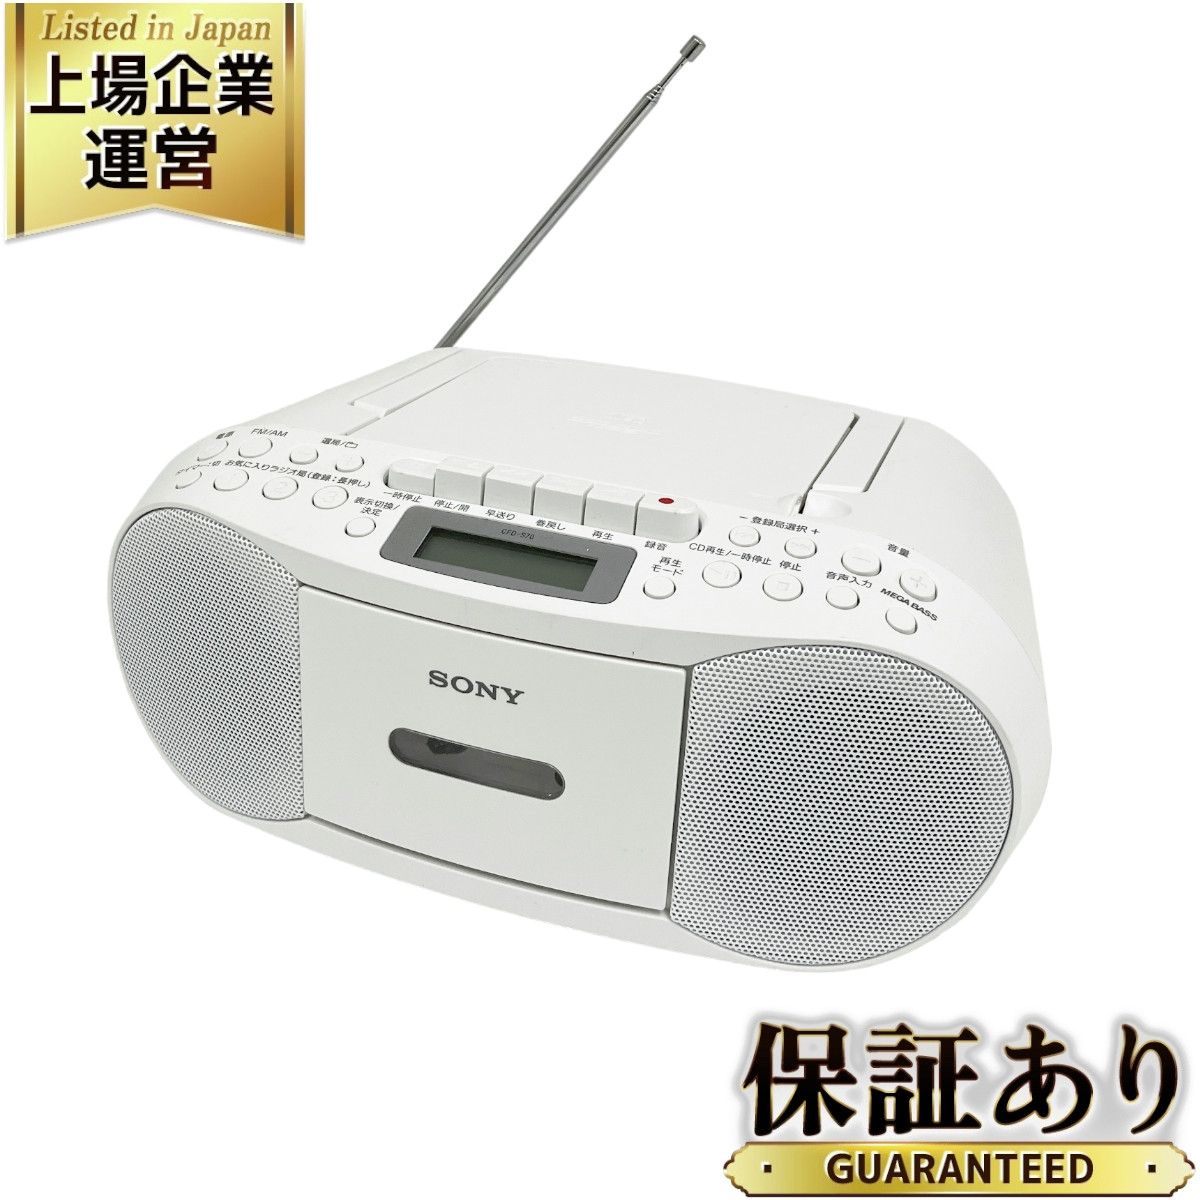 SONY CFD-S70 CD ラジカセ パーソナル オーディオシステム ソニー ホワイト 中古 良好O9009614